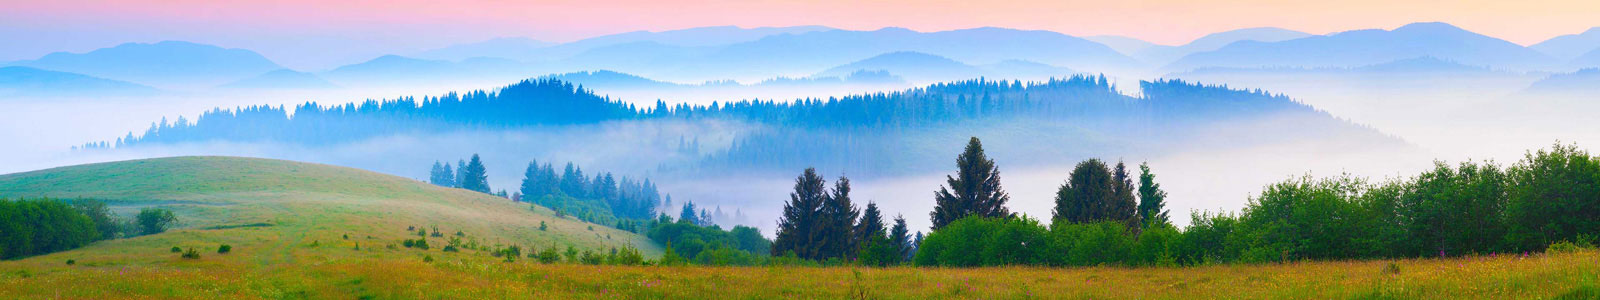 №4407 - Потрясающее летнее утро в тумане, Карпаты